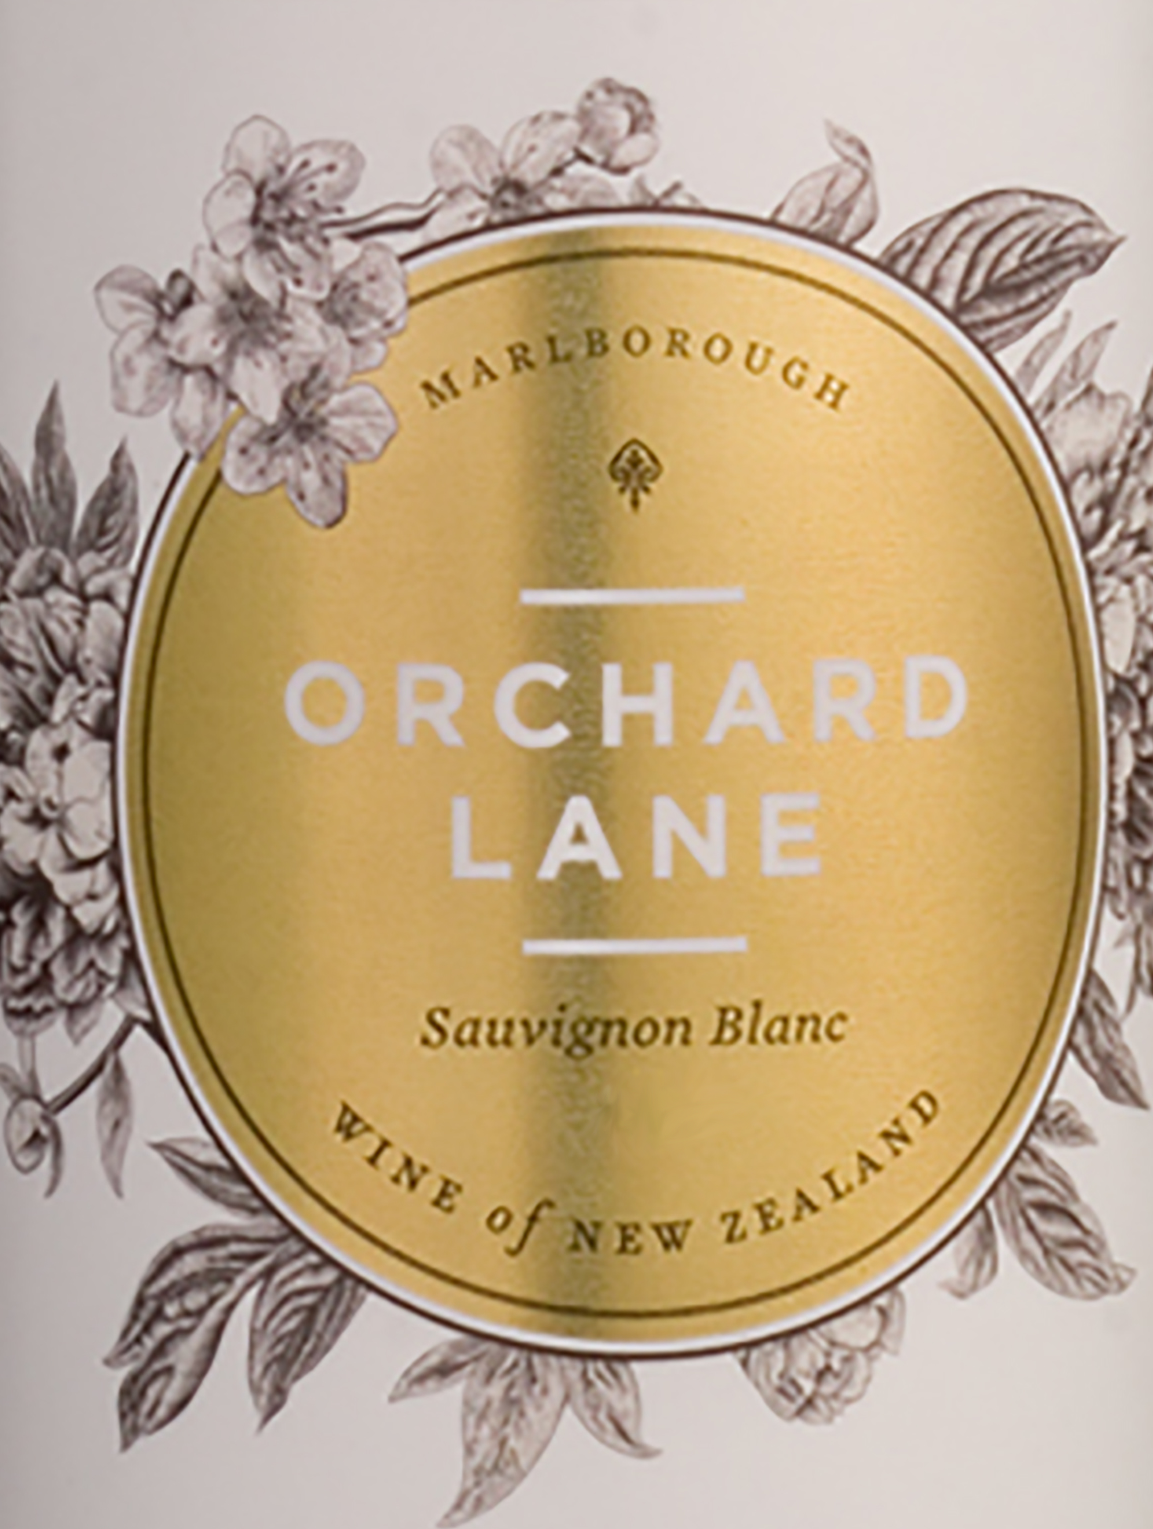 2020 Orchard Lane Sauvignon Blanc Marlborough - click image for full description